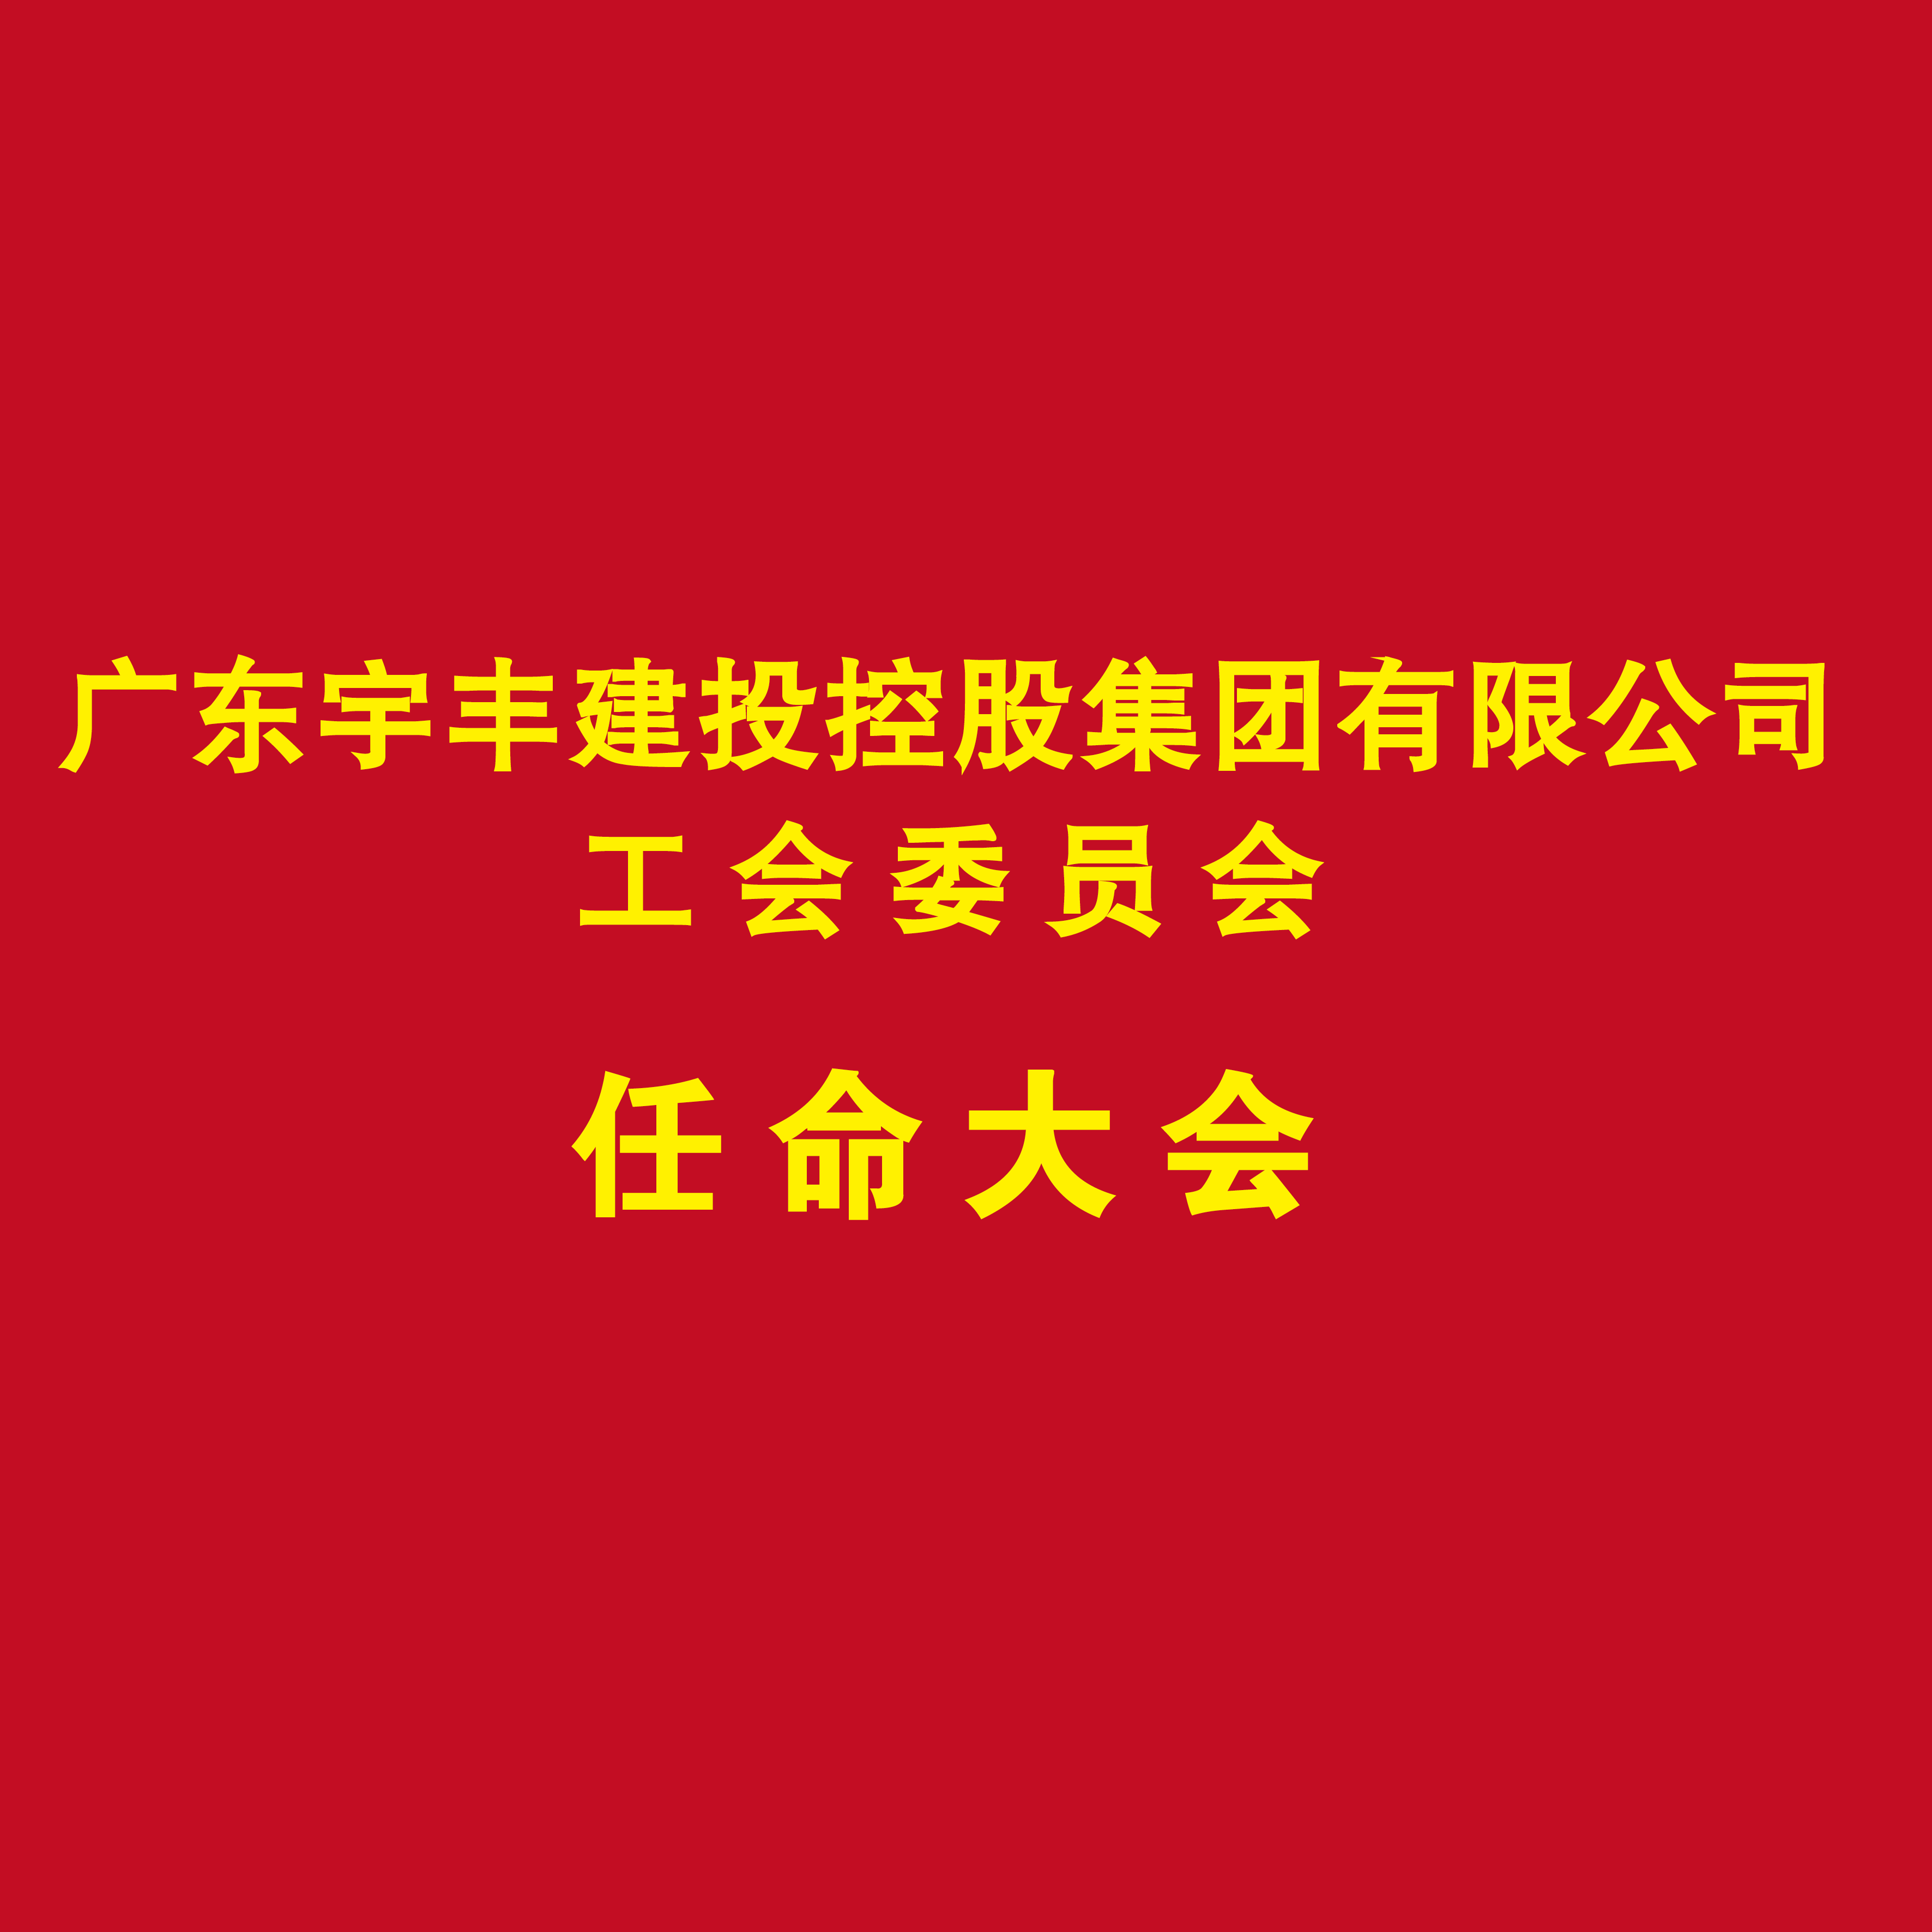 广东宇丰建投控股集团有限公司工会委员会任命大会在集团总部顺利召开